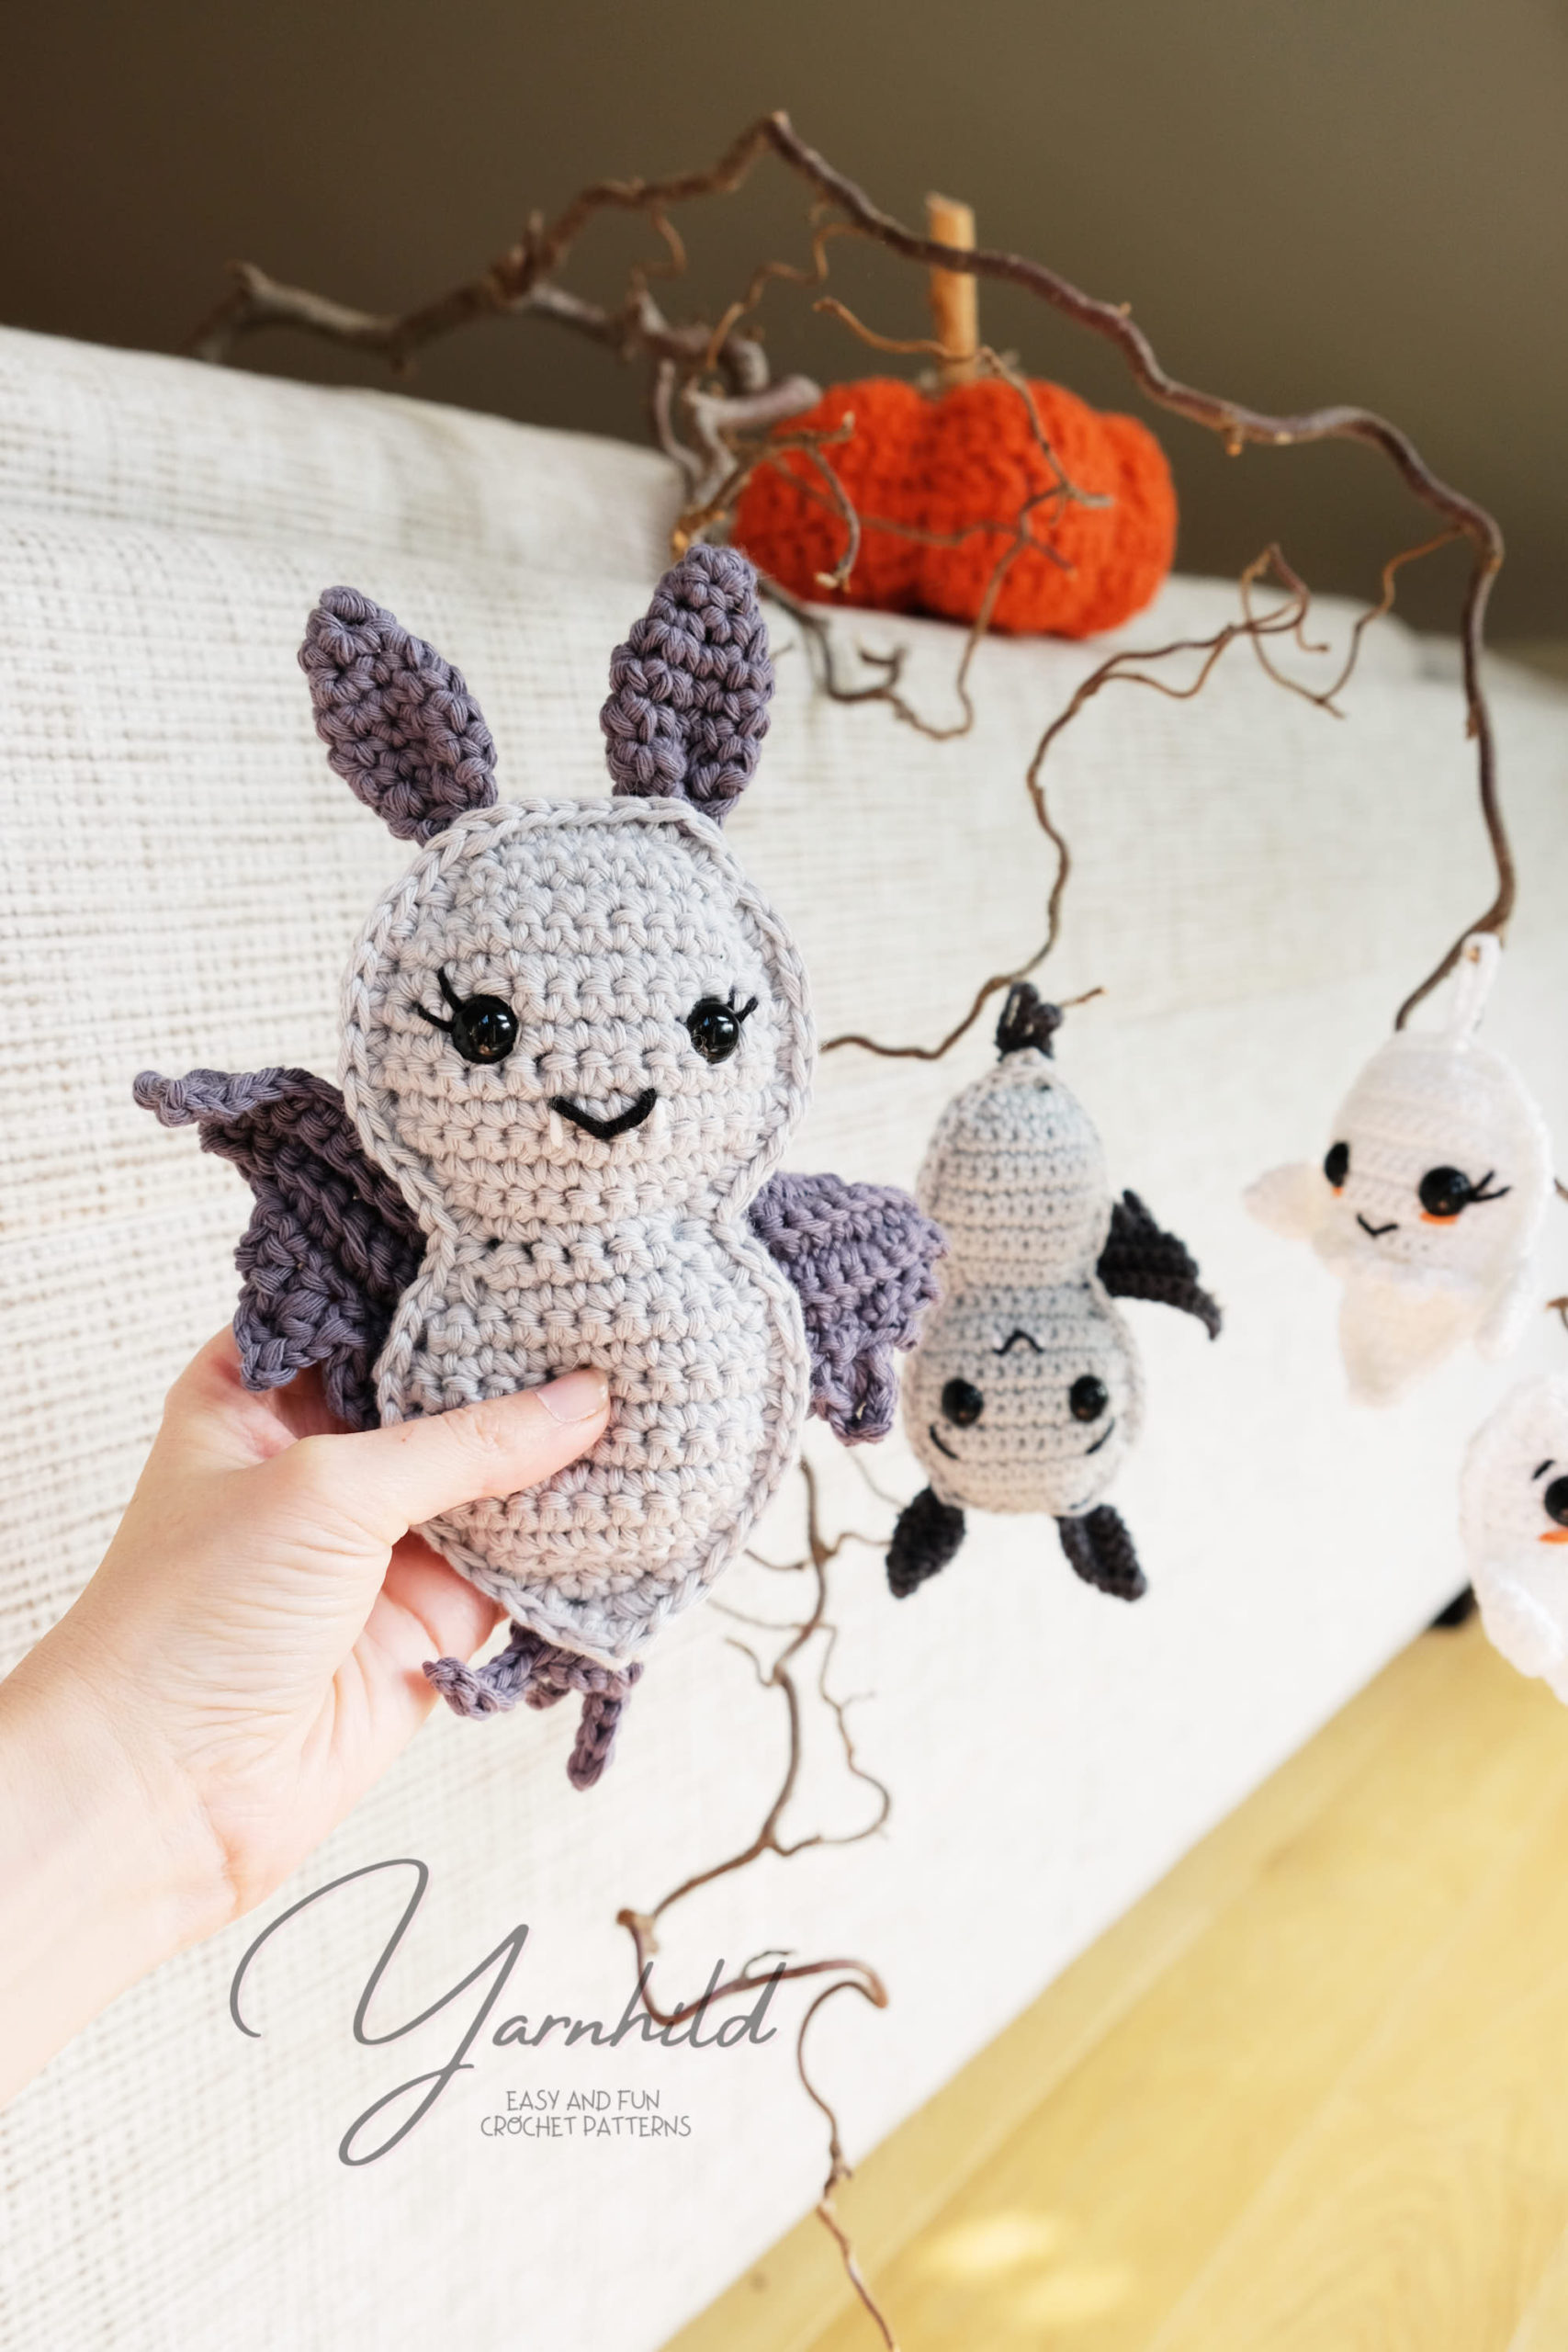 Crochet Halloween patterns